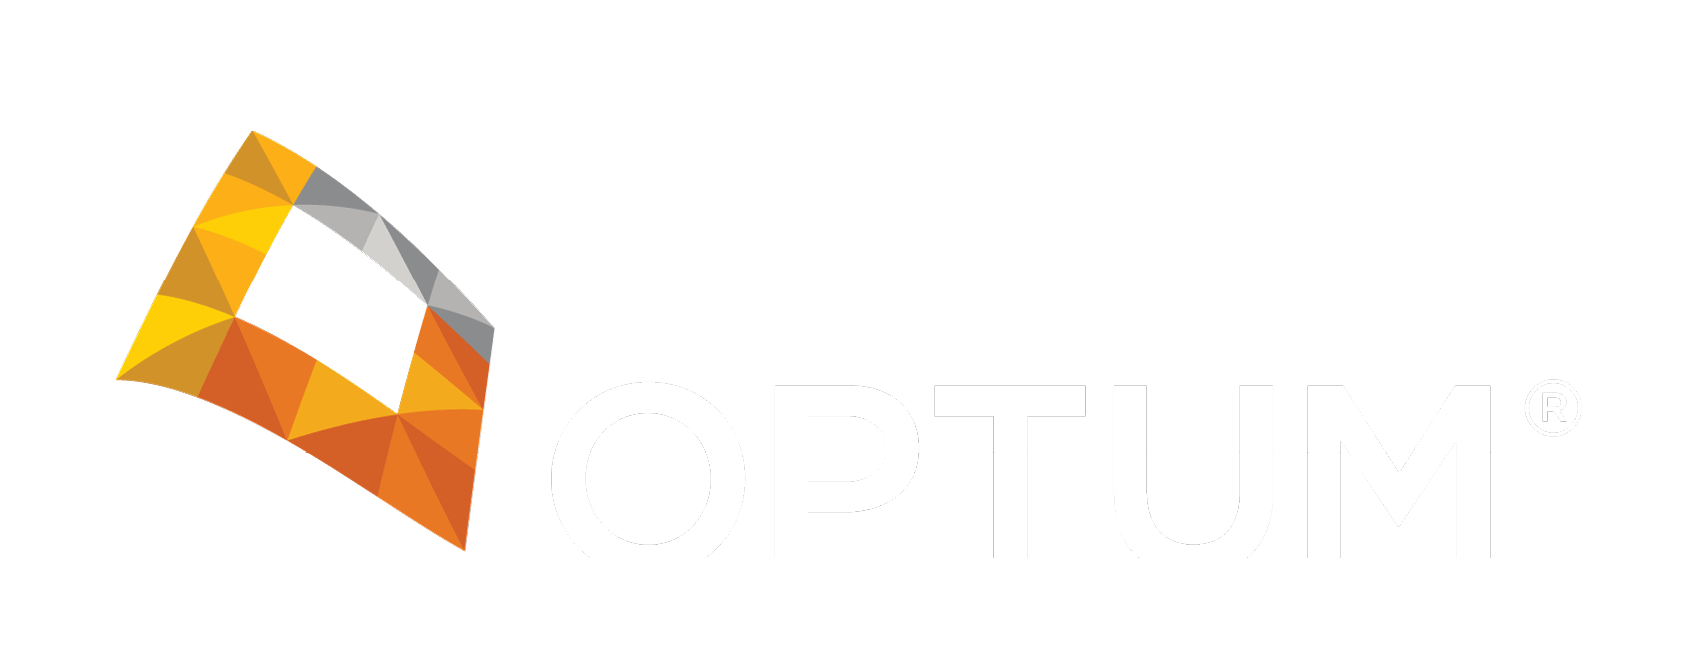 OptumRx Logo - Optum Logo - 9000+ Logo Design Ideas